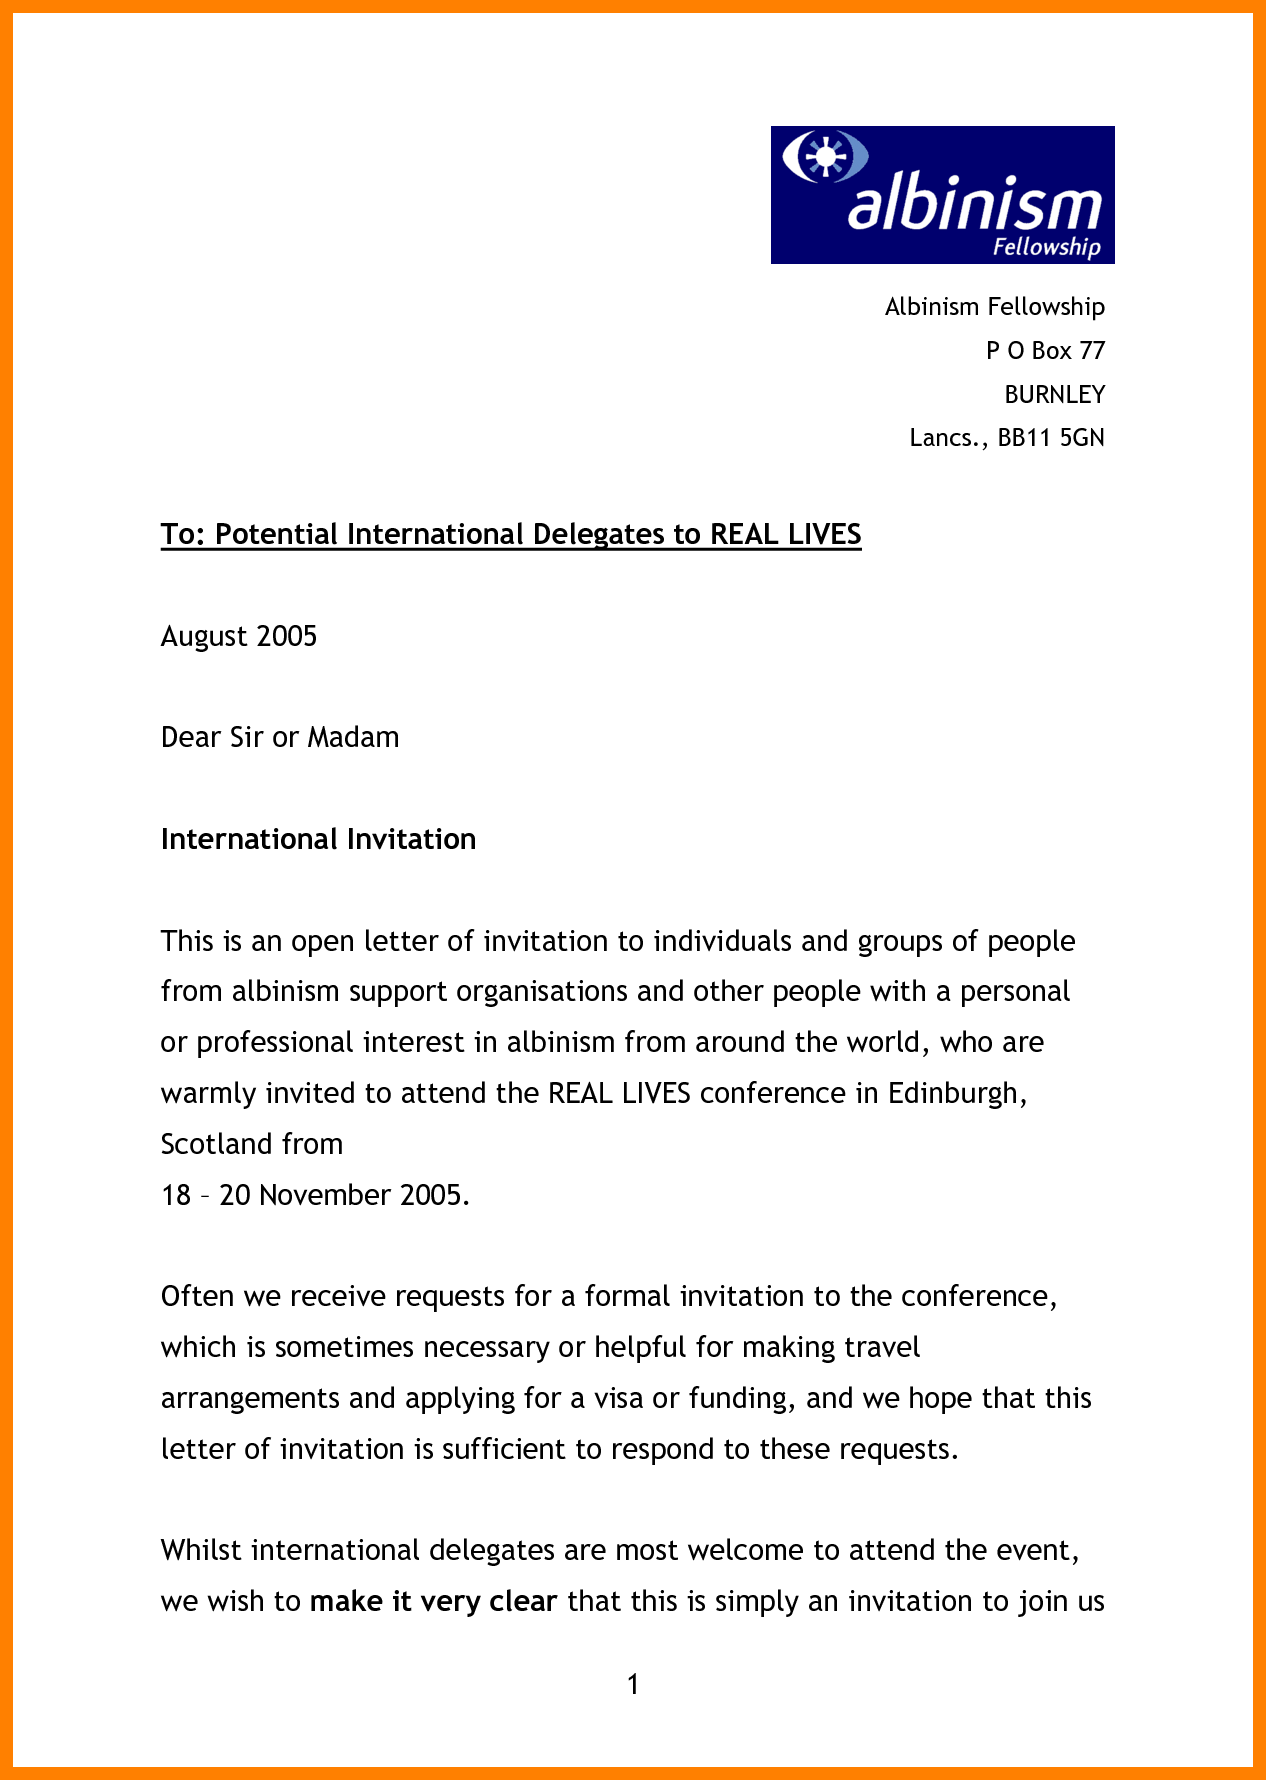 Formal Invitation Letter - Gambaran